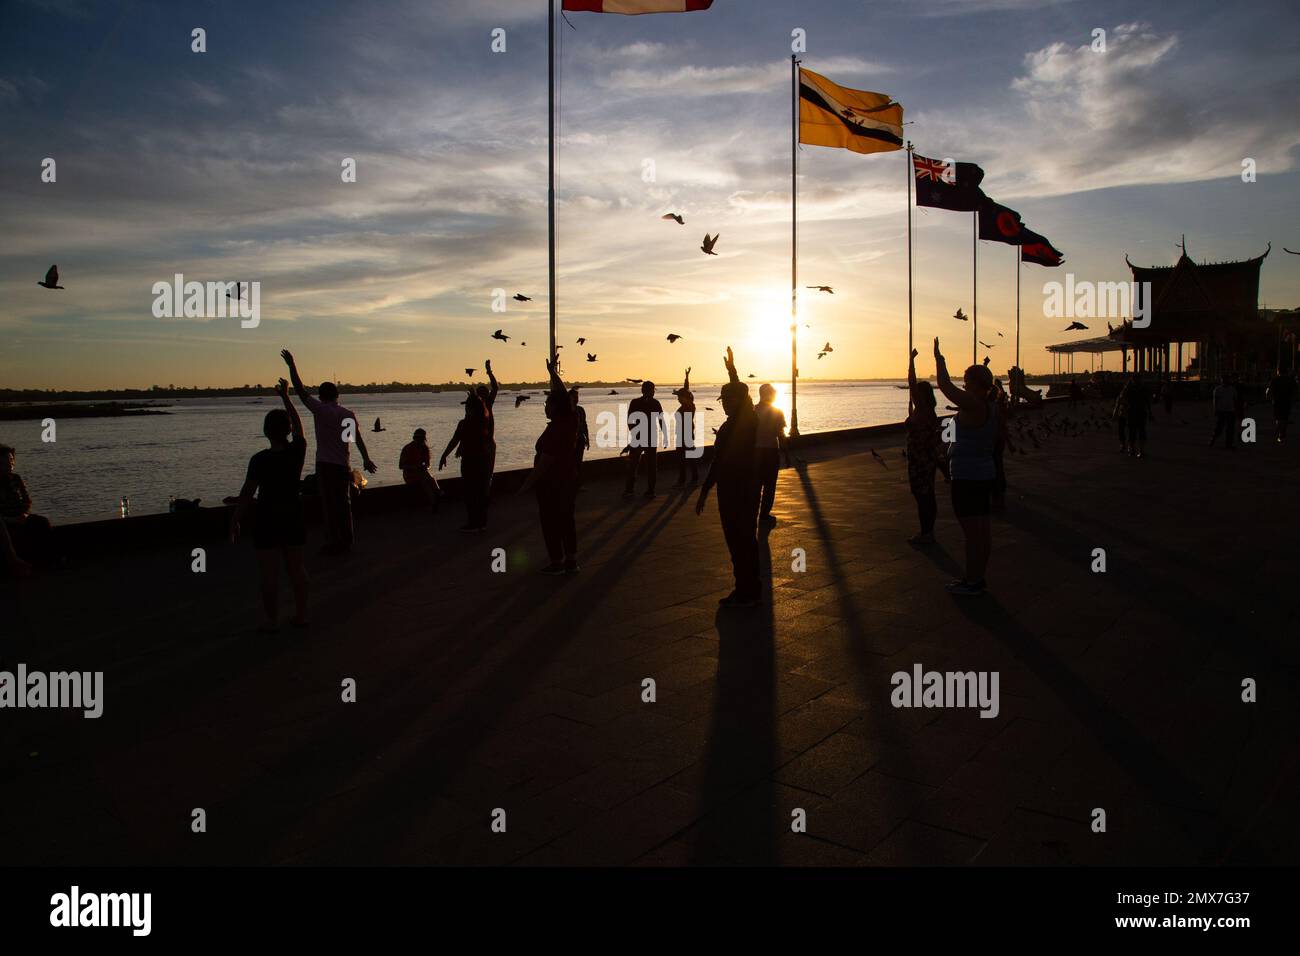 Kambodscha Phnom Penh Silhouetten von Menschen, die Aerobic-Übungen vor Flaggen machen ( Straßenfotografie ) - Kambodscha Stockfoto